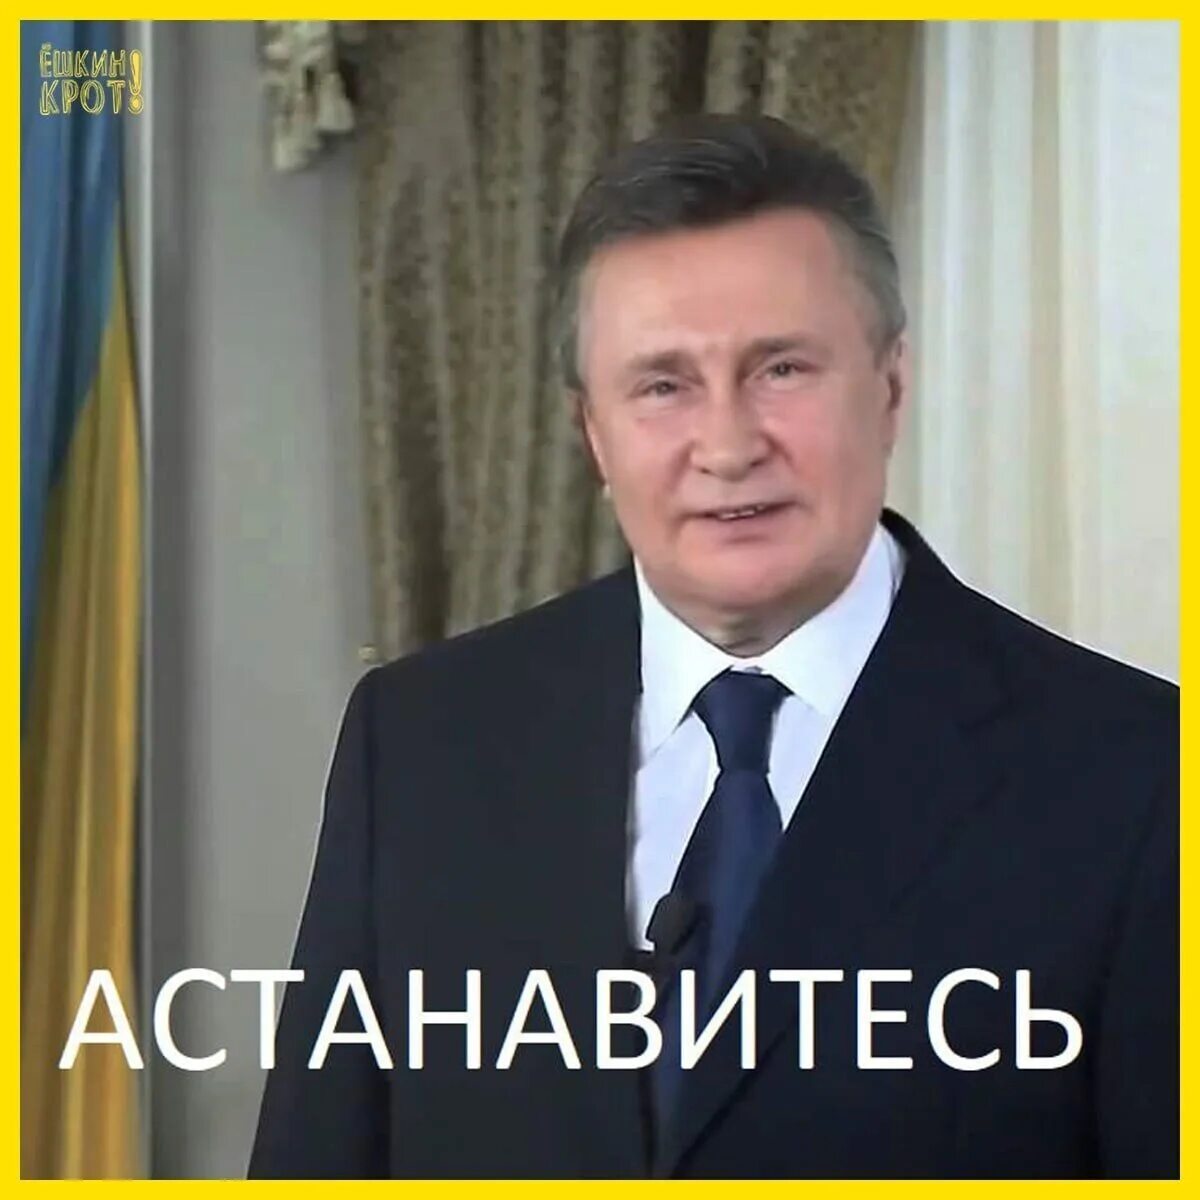 Заявить остановиться. Остановитесь Янукович. Остановись Янукович. Янукович остановитесь фото. Янукович АСТАНАВИТЕСЬ картинка.